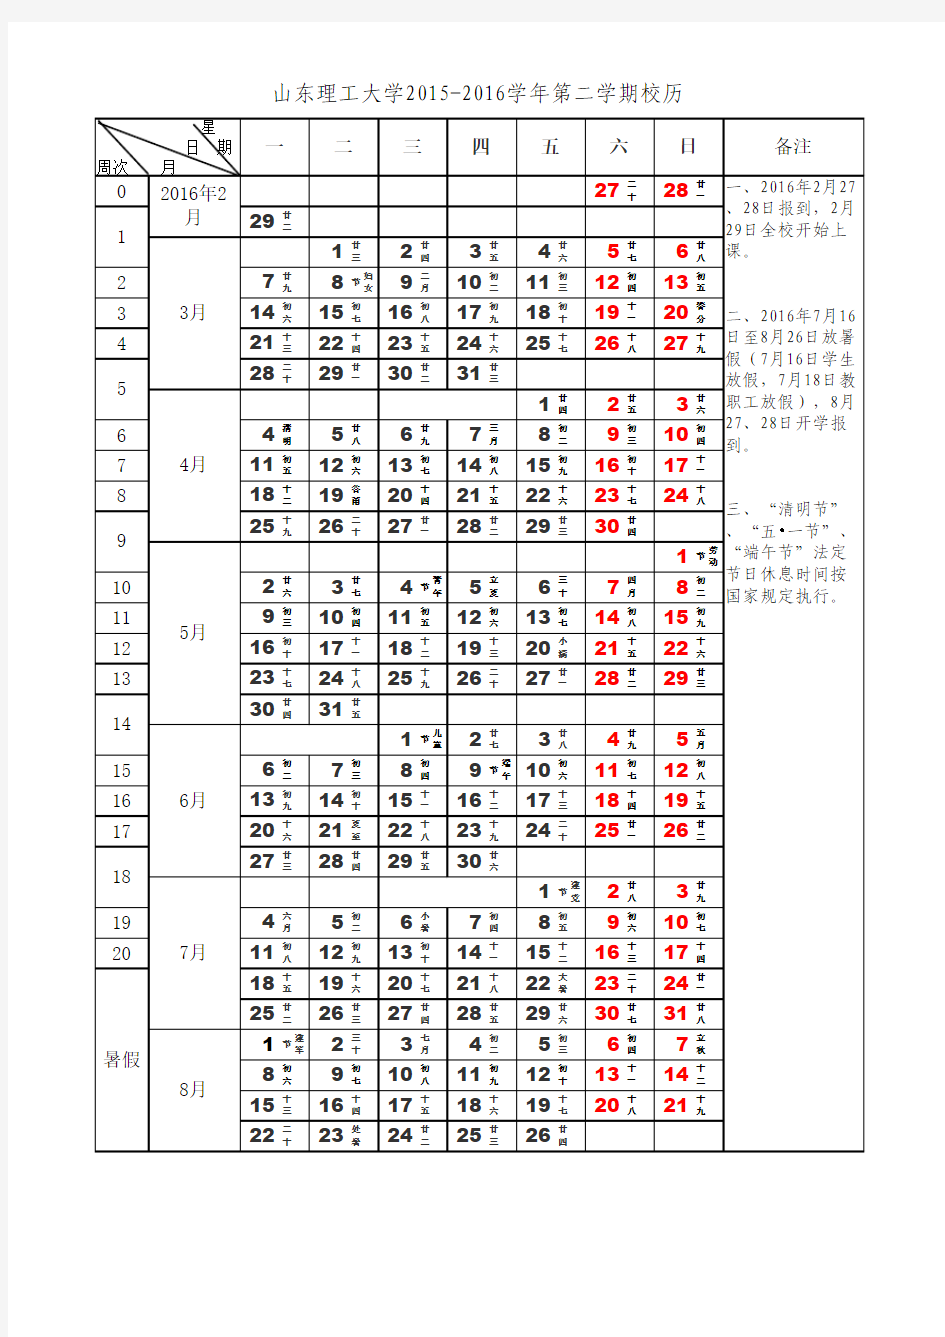 2015-2016 山东理工大学校历